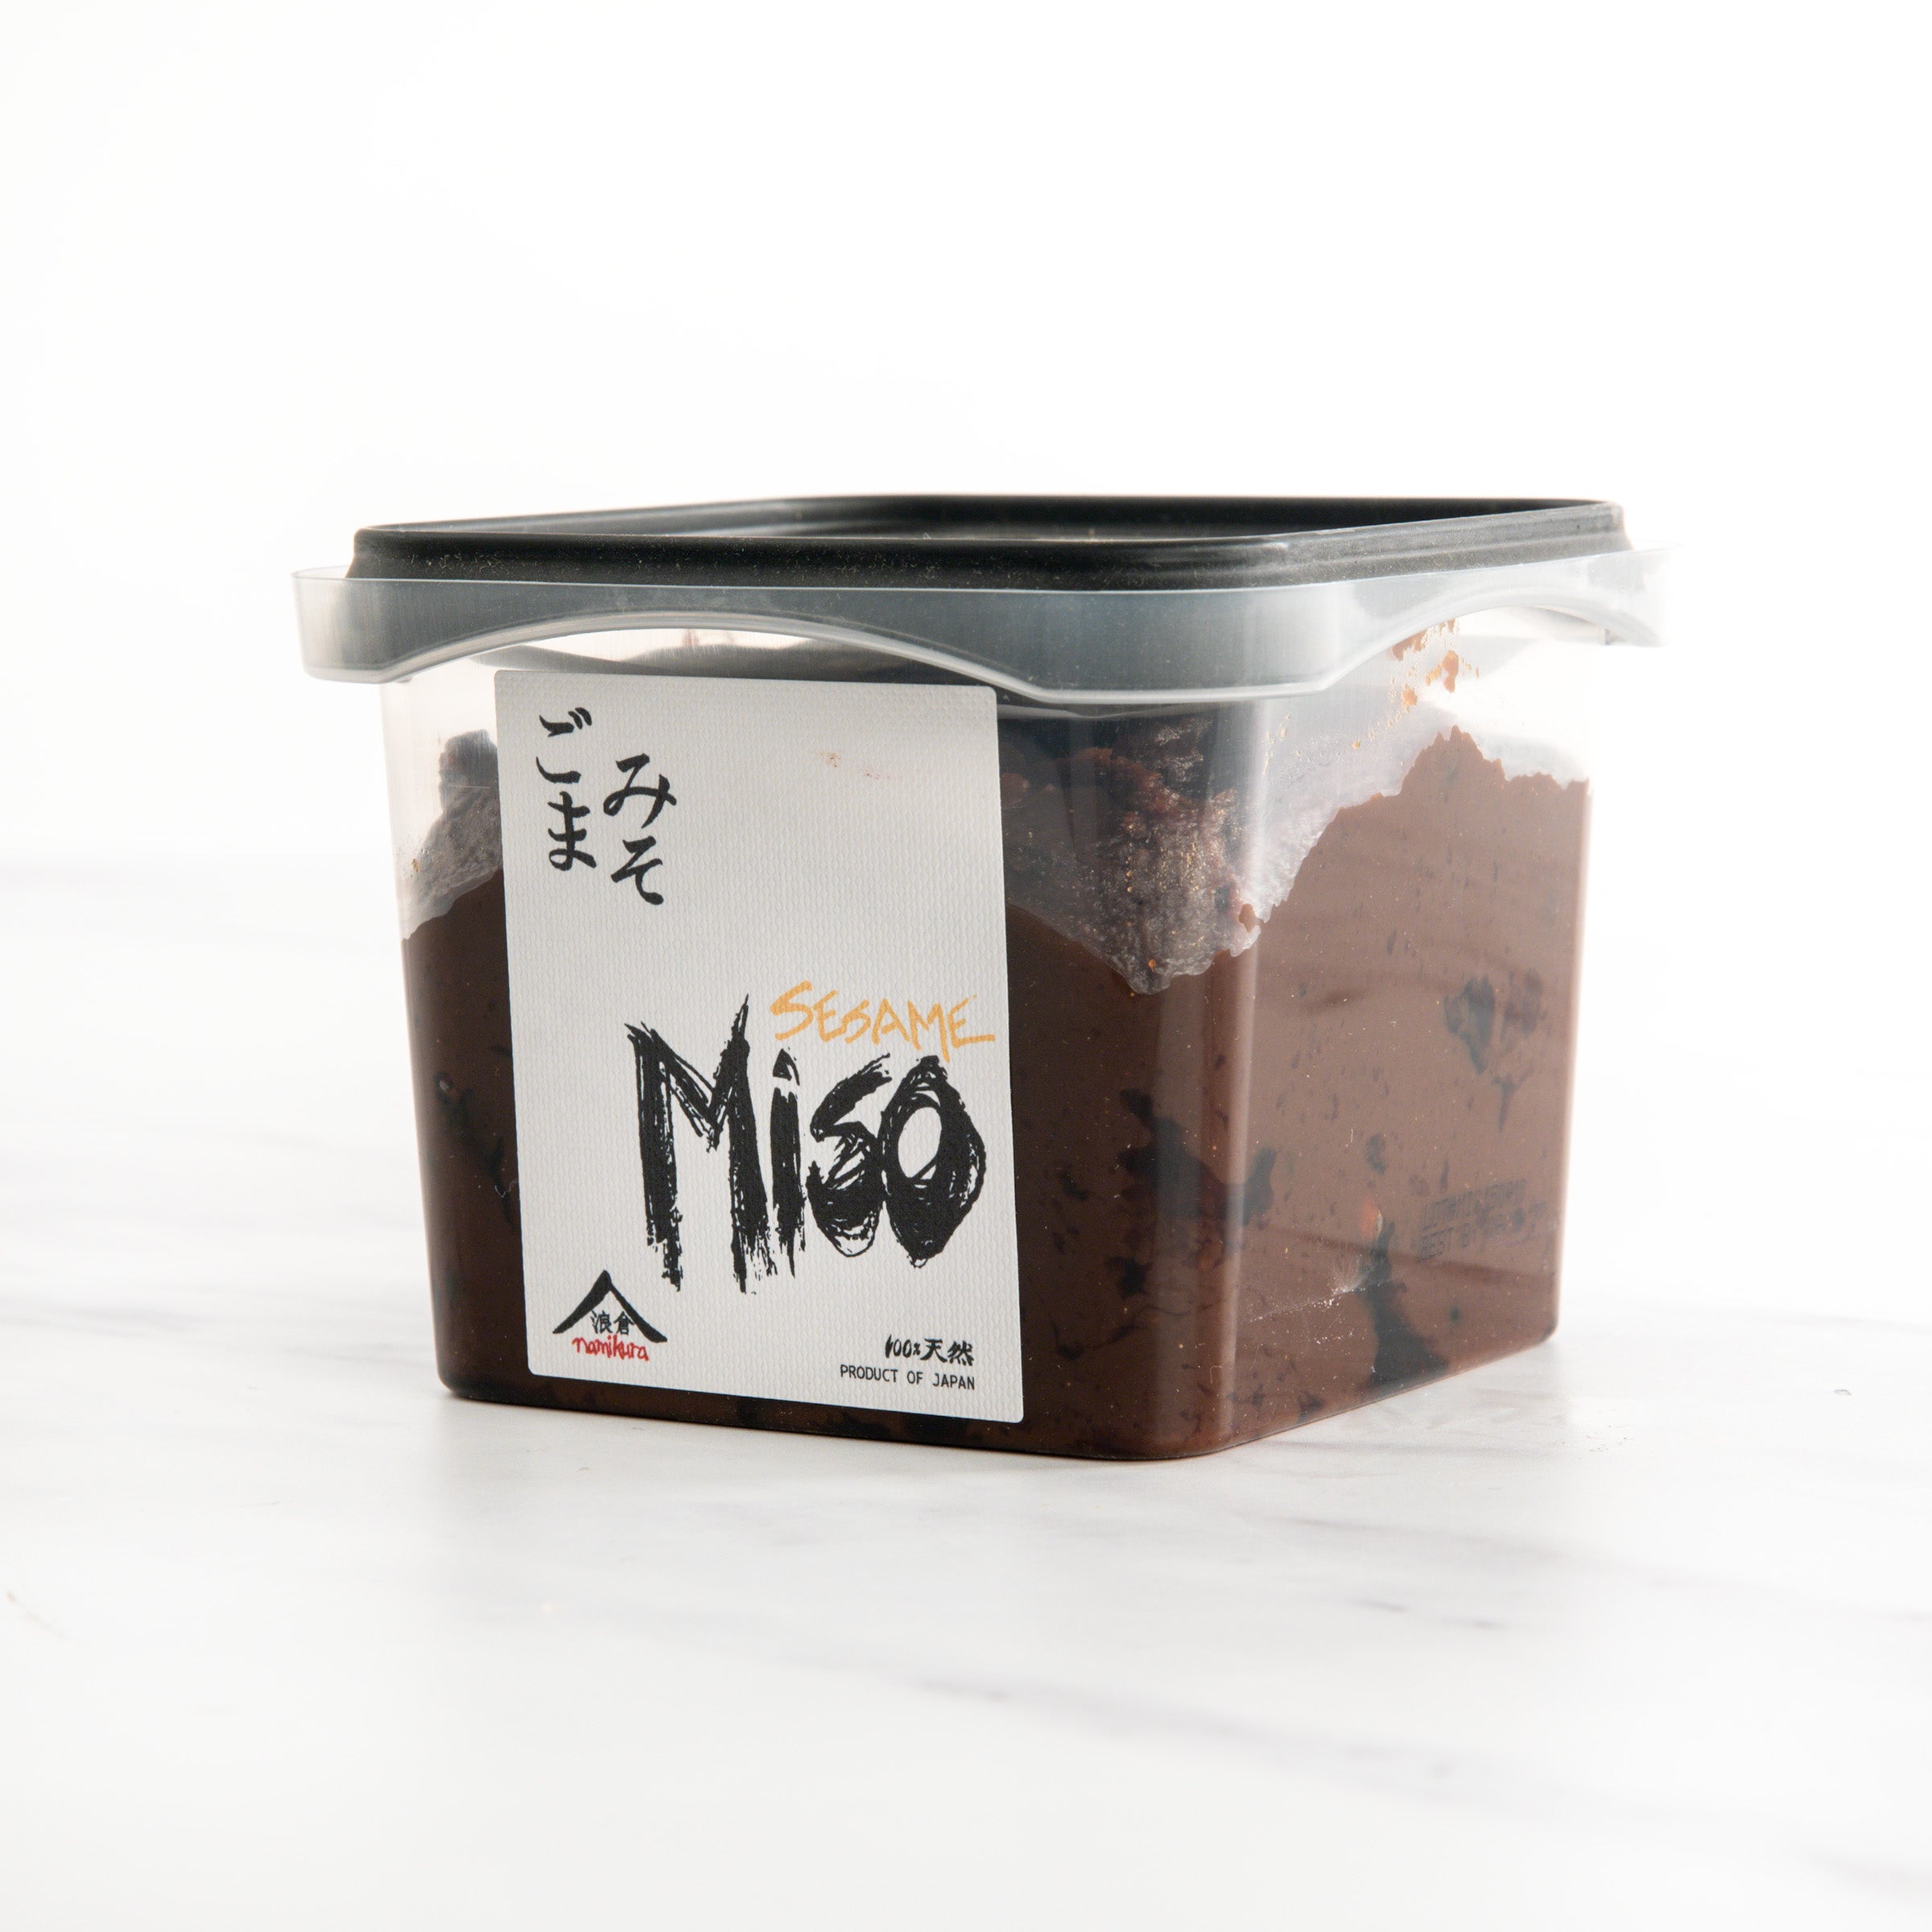 Mugi miso non pasteurisé - Cuisine japonaise - Miso